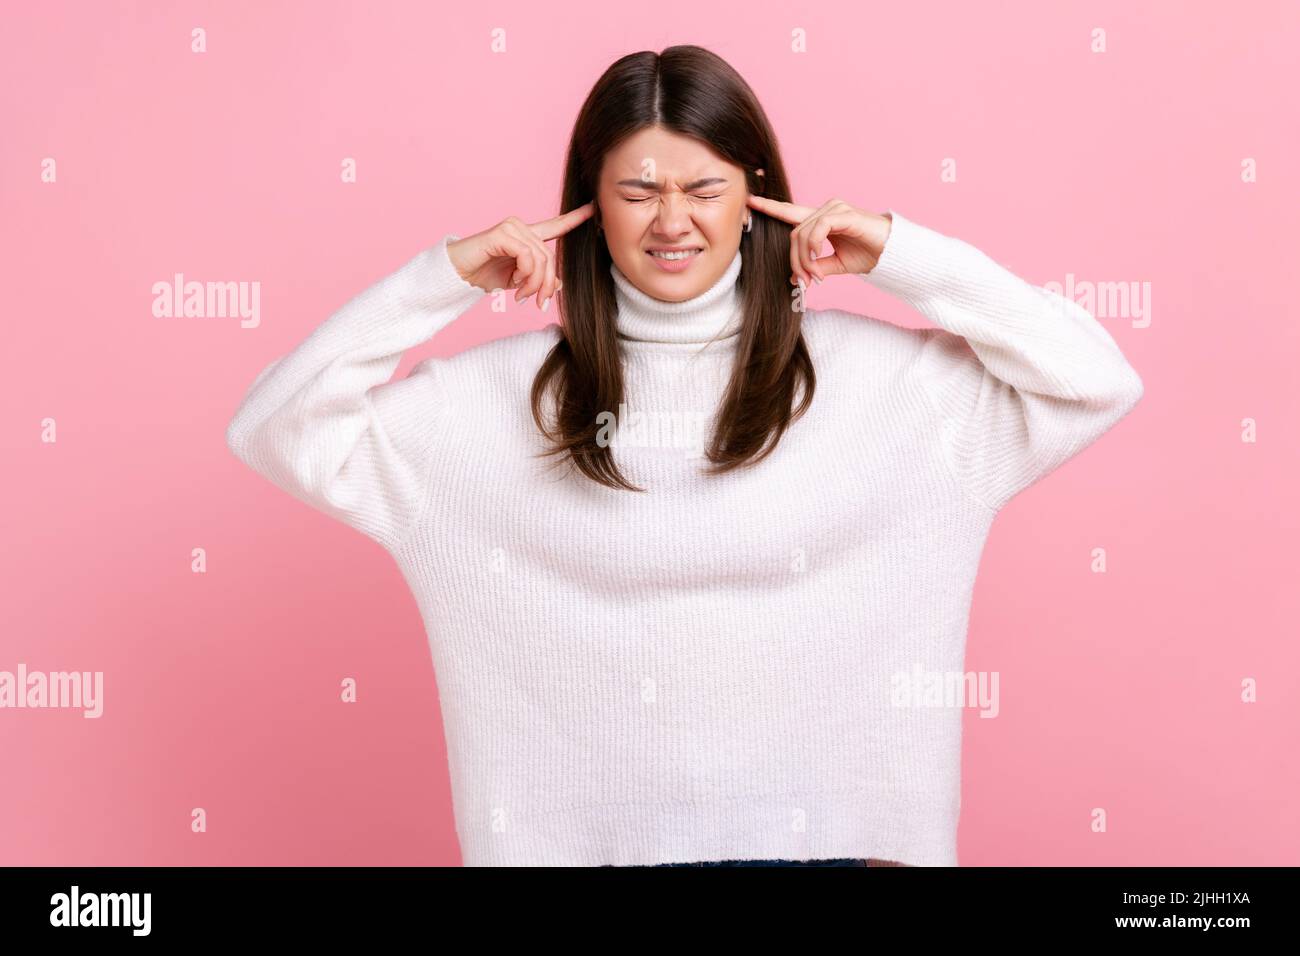 Porträt einer unglücklichen schönen Frau stehend und schloss ihre Ohren mit der Hand und wollen nicht hören, trägt weißen lässigen Stil Pullover. Innenaufnahme des Studios isoliert auf rosa Hintergrund. Stockfoto